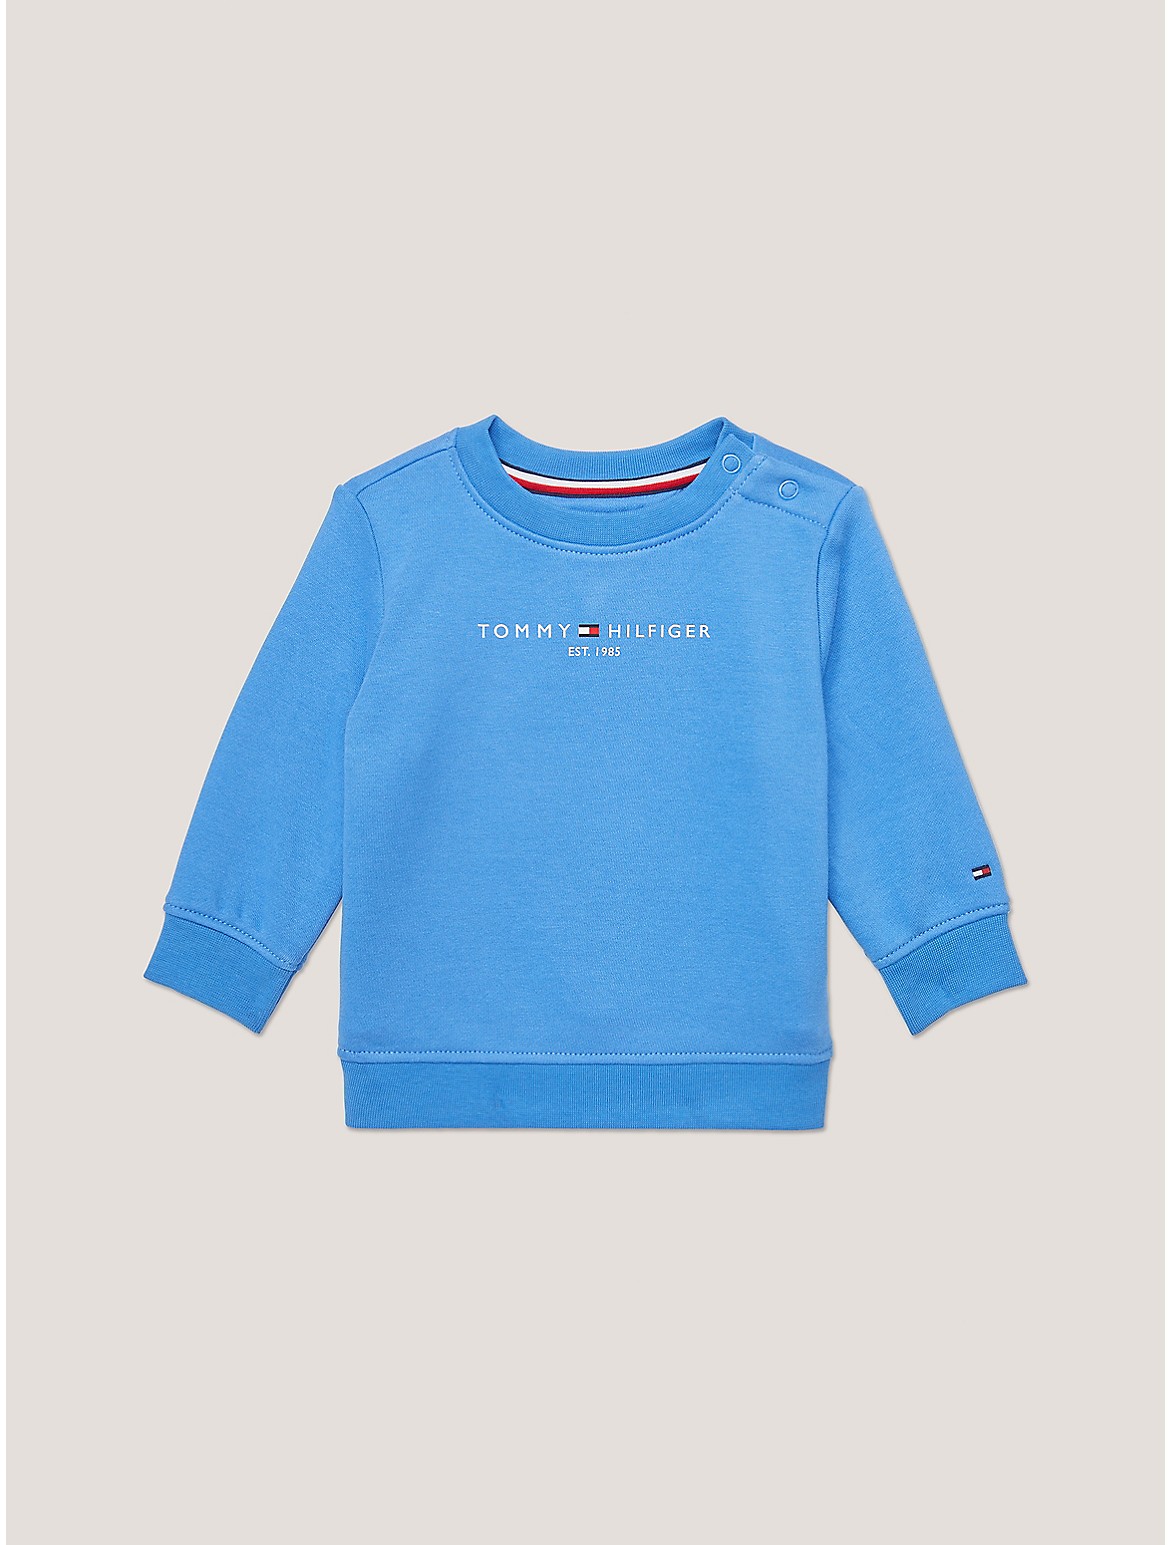 Tommy Hilfiger Boys' Babies' Tommy Logo Sweatshirt - Blue - 12M